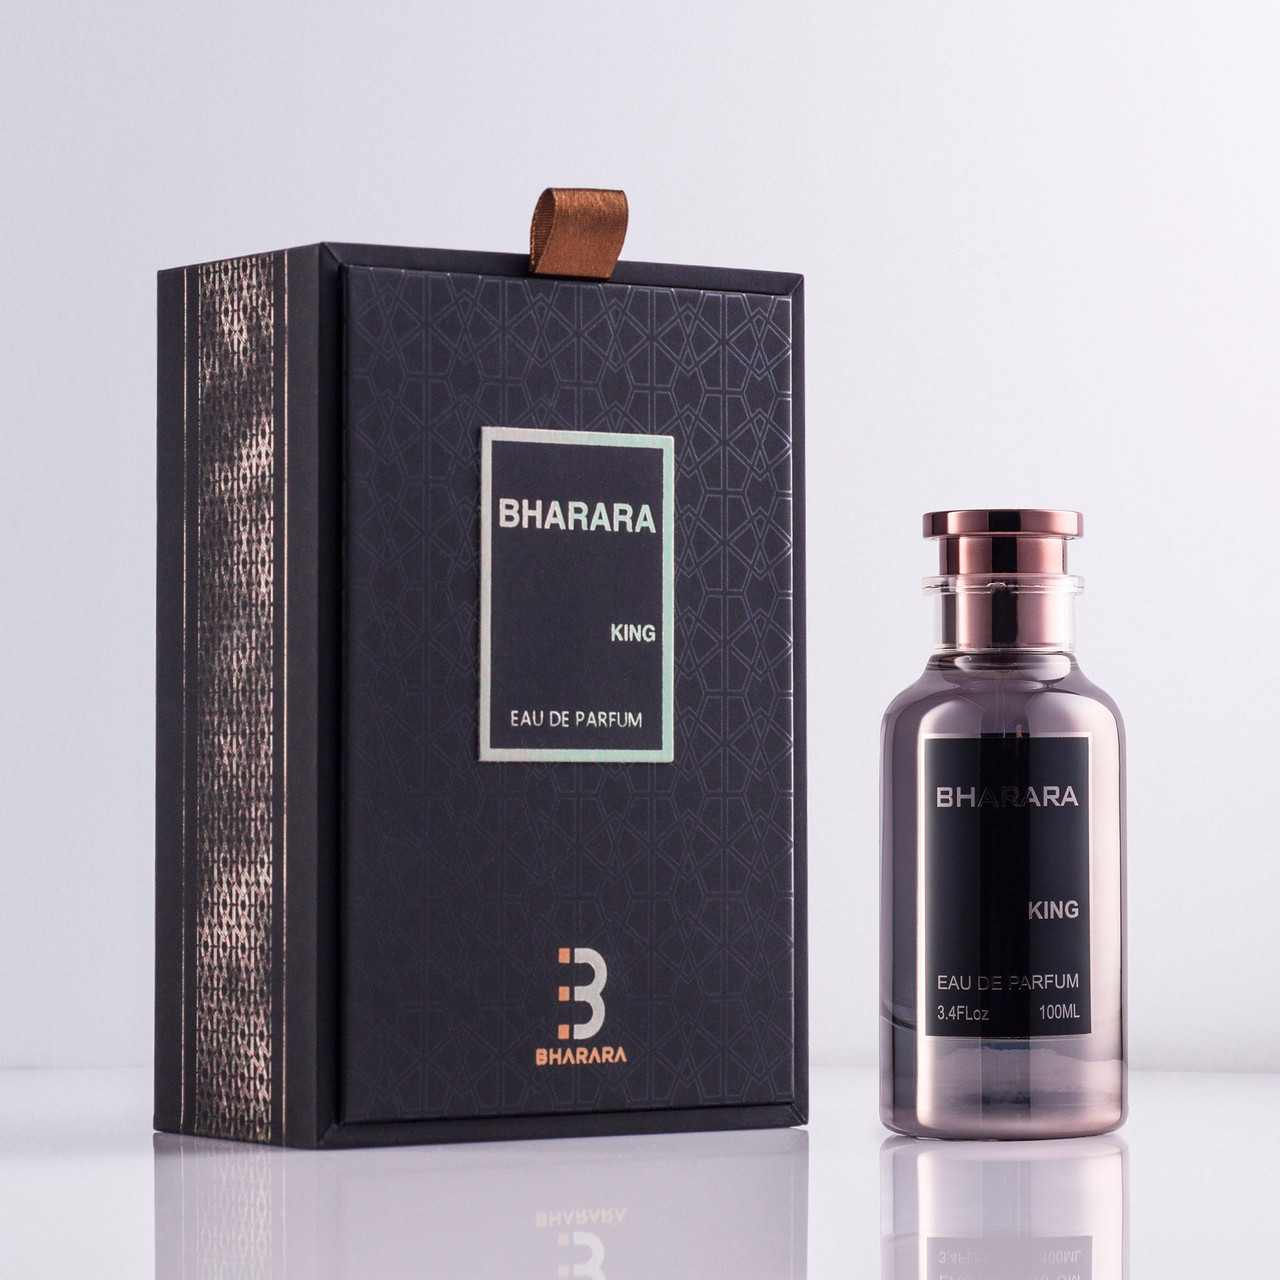 Grand Master Extrait de Parfum - Black King, 3.4 oz.